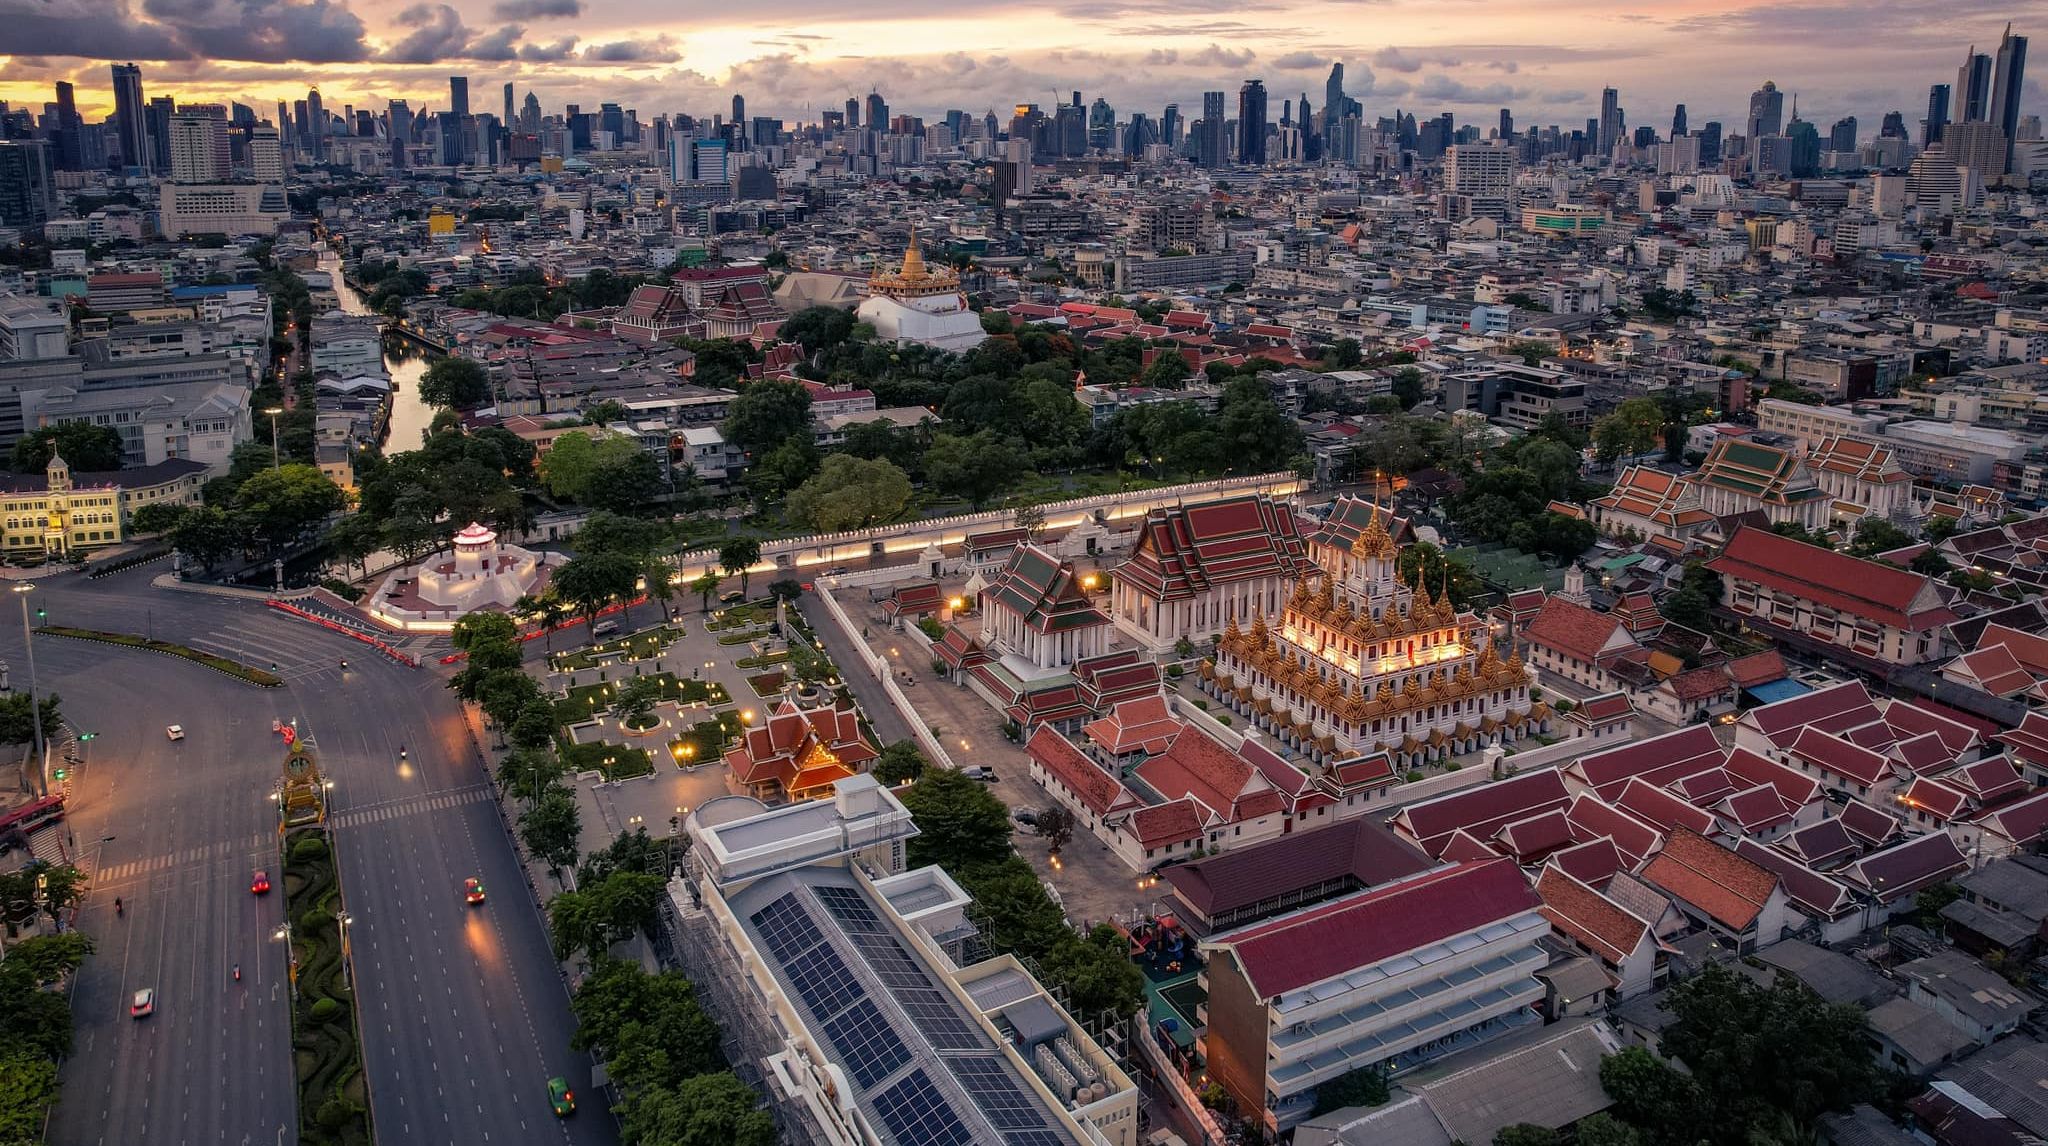 Aerial view of Temple in Bangkok